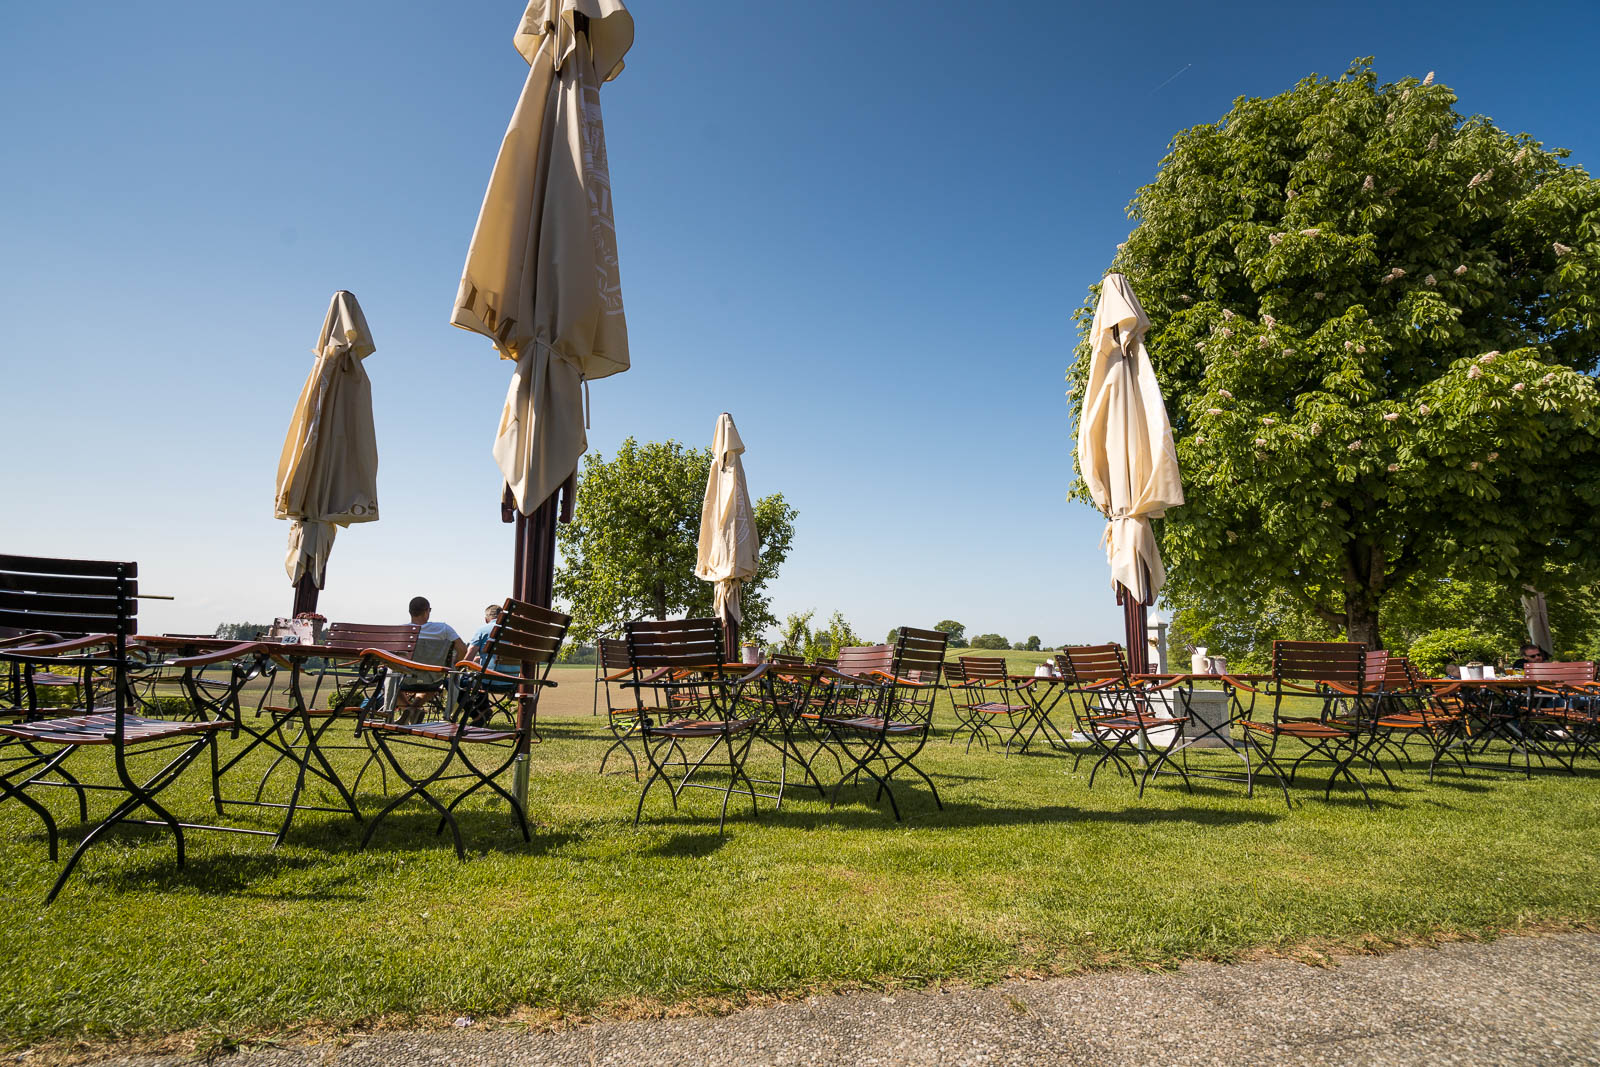 Große Sonnenschirme garantieren auch bei heißem Sommerwetter immer einen schattigen Platz im gemütlichen Biergarten der Kugler Alm Ebersberg